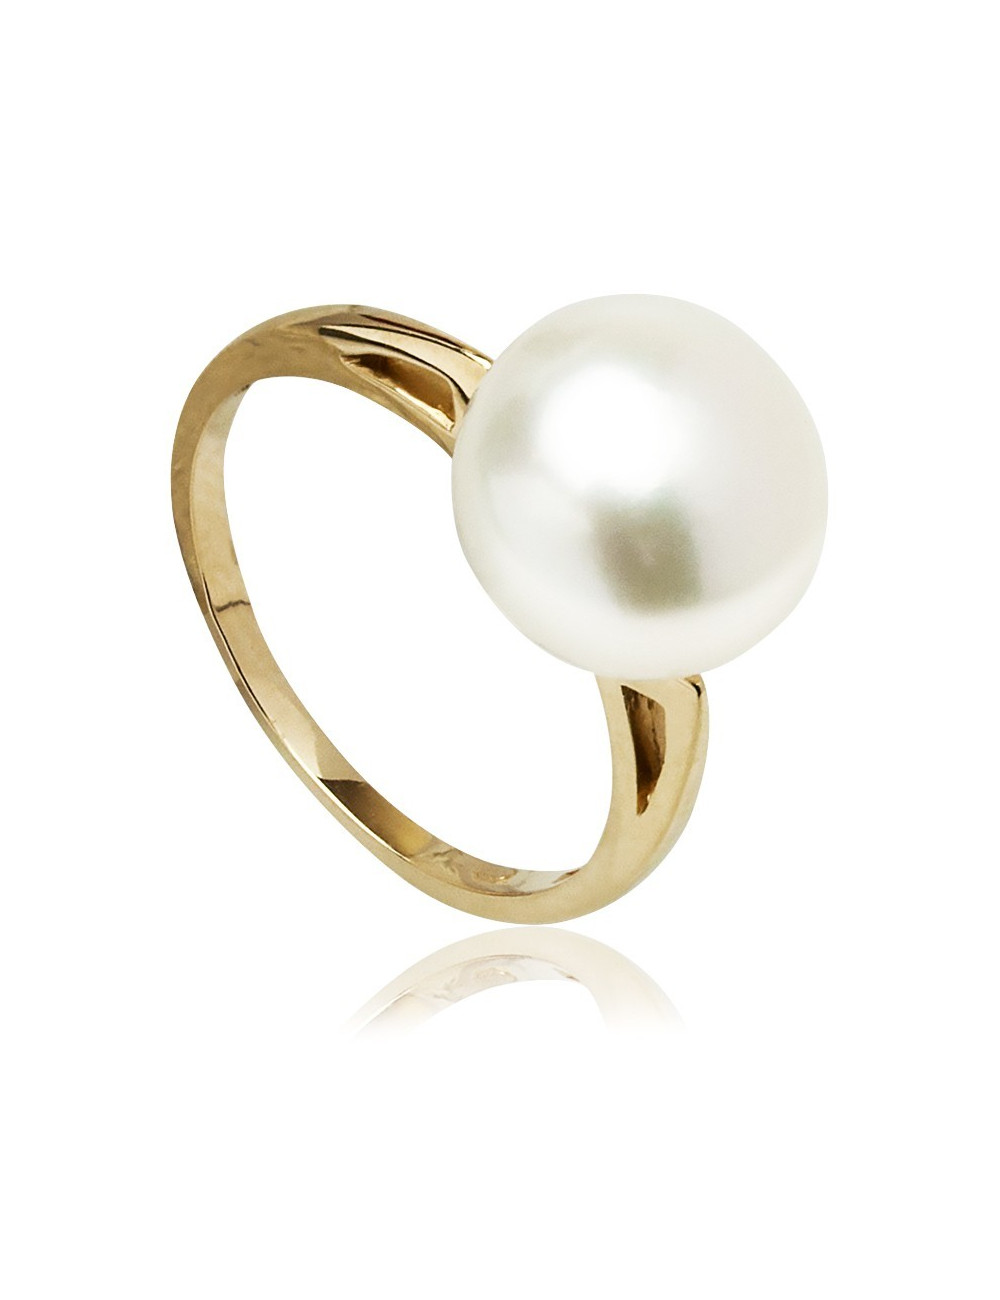 Złoty pierścionek z perłą Biwa IR0736G